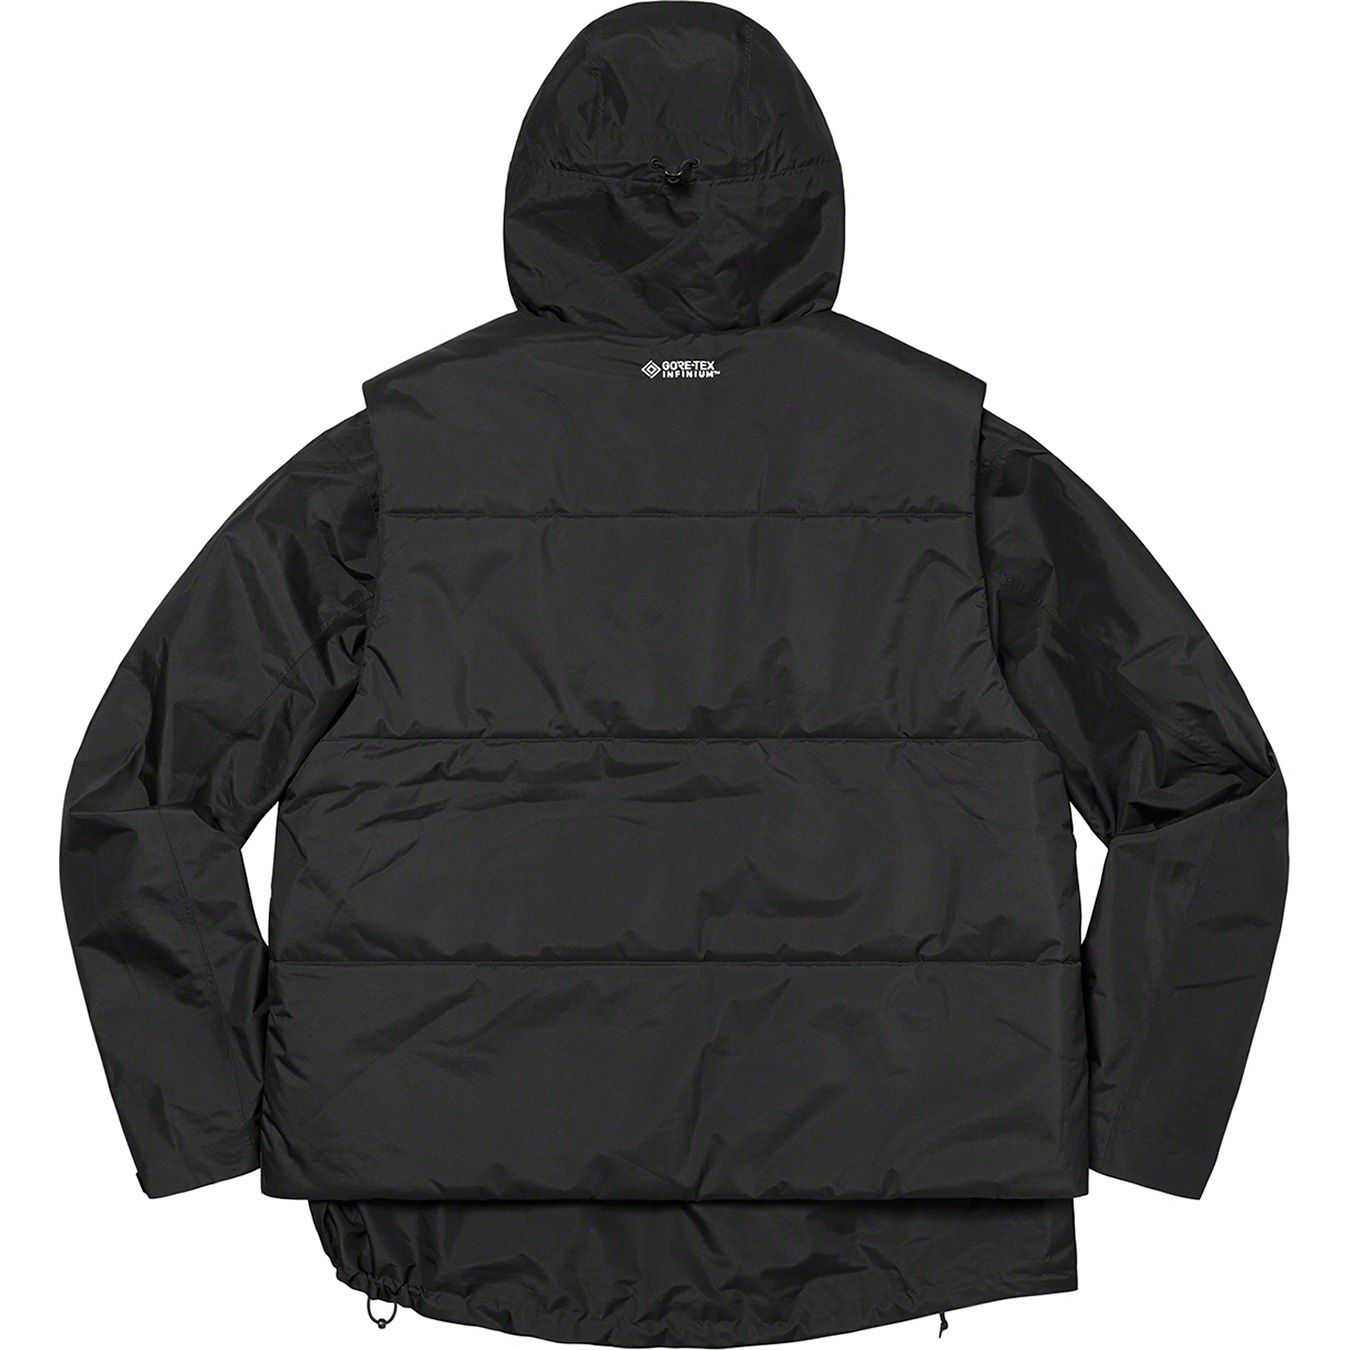 Supreme 2-in-1 GORE-TEX Shell + WINDSTOPPER® Vest